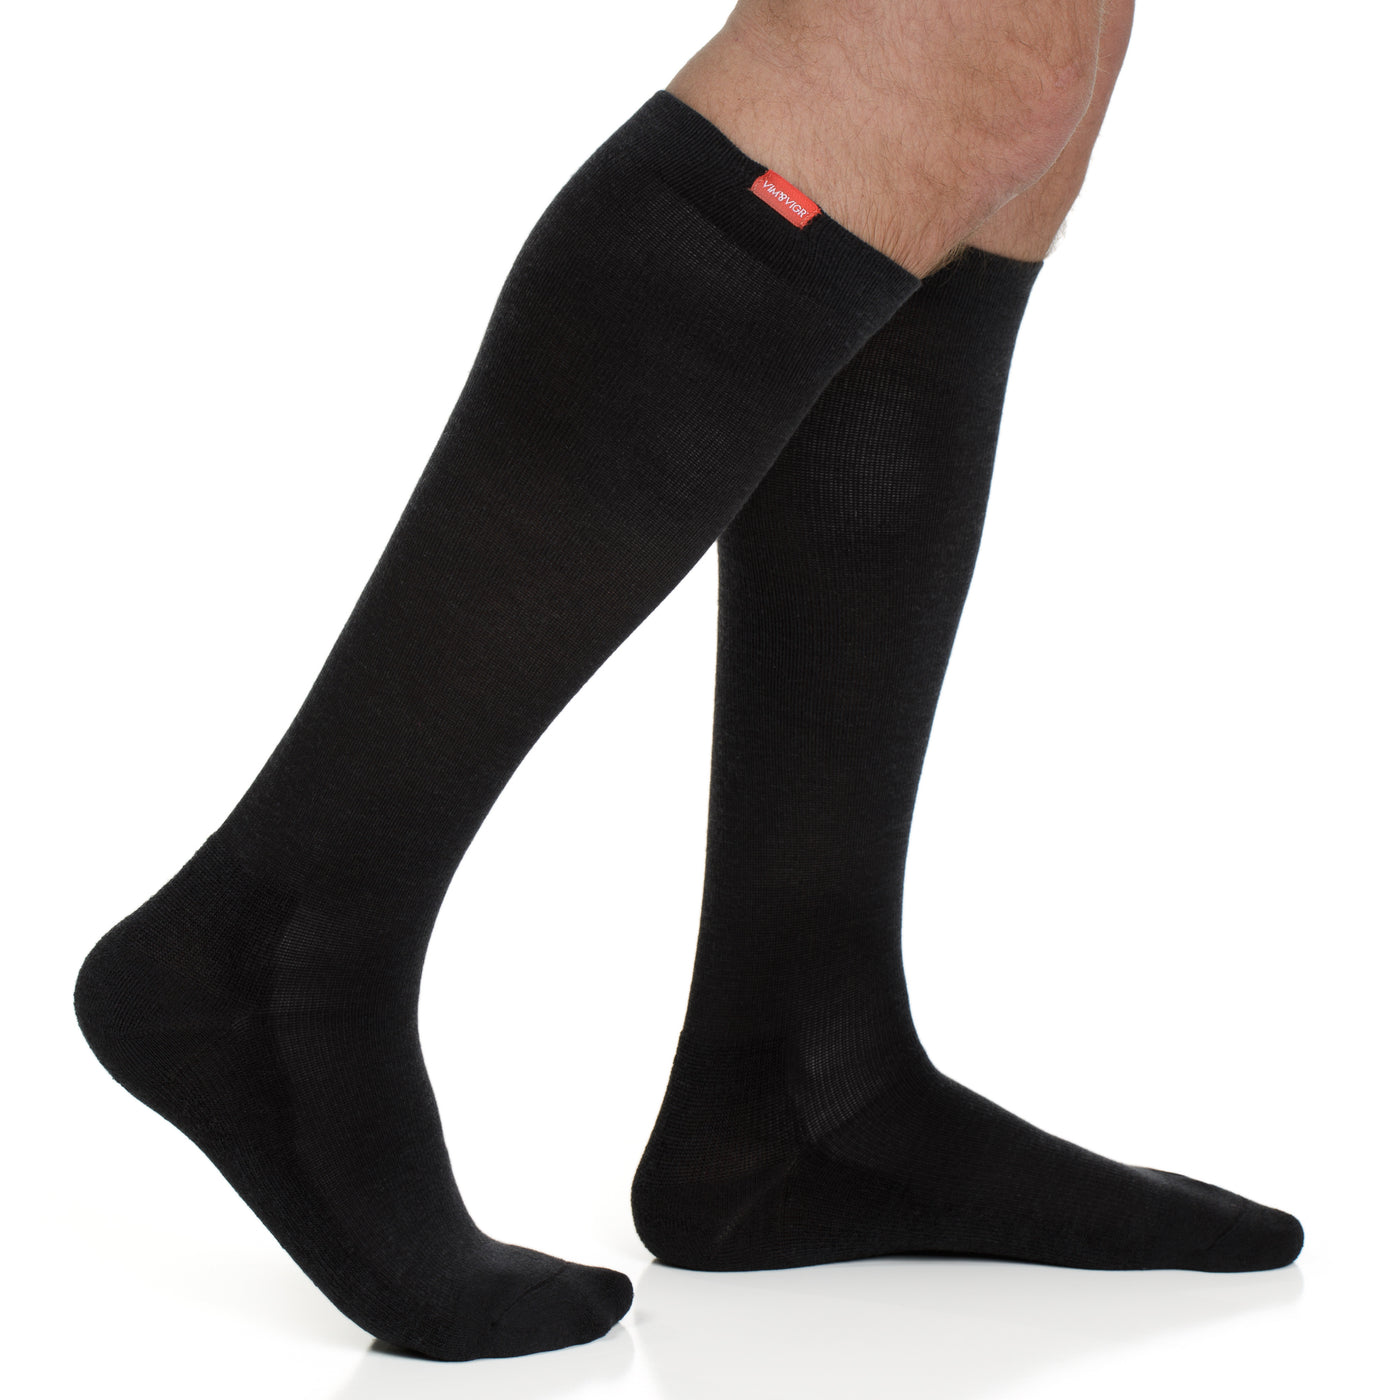 medical-grade 20-30 mmHg: Solid Black (Cotton) compression socks for men & women